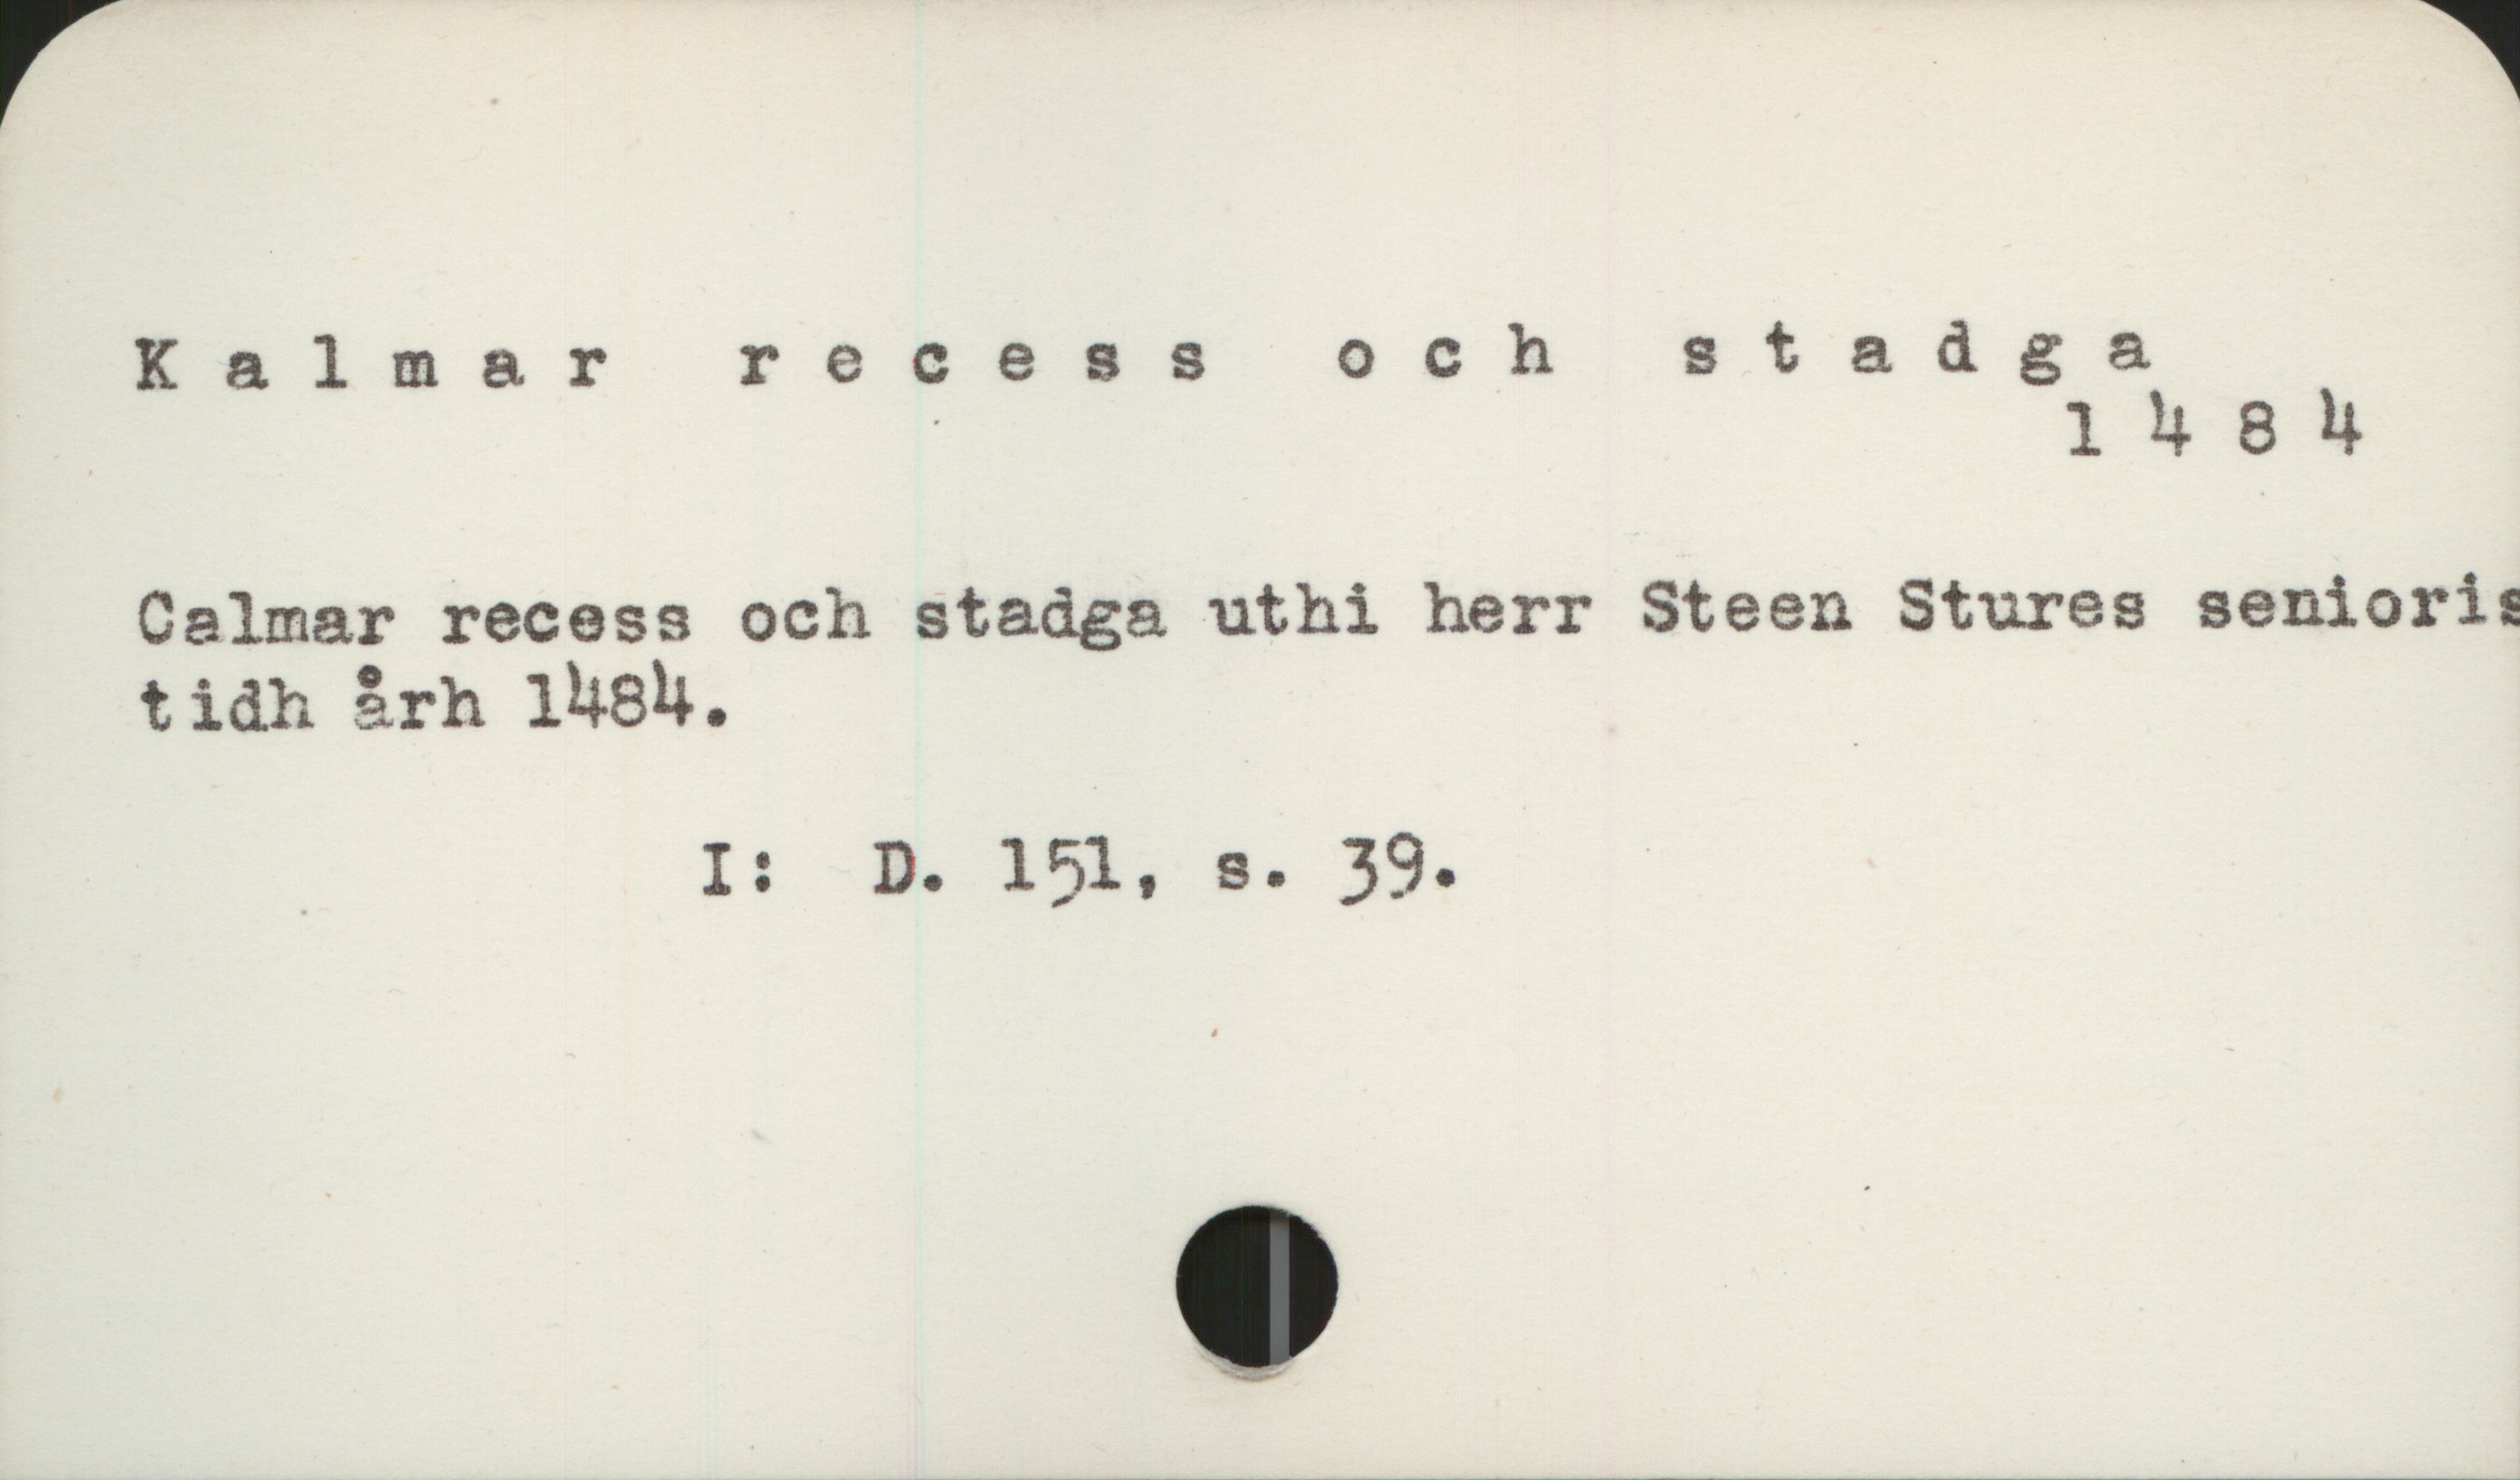  Kalmarrecessochstadga
. ' 1 4 8 4
Calmar recess och stadga uthi herr Steen Stures seniori:
tidh 3rh lV8N. .
_ I: D. 151, s. 39.

